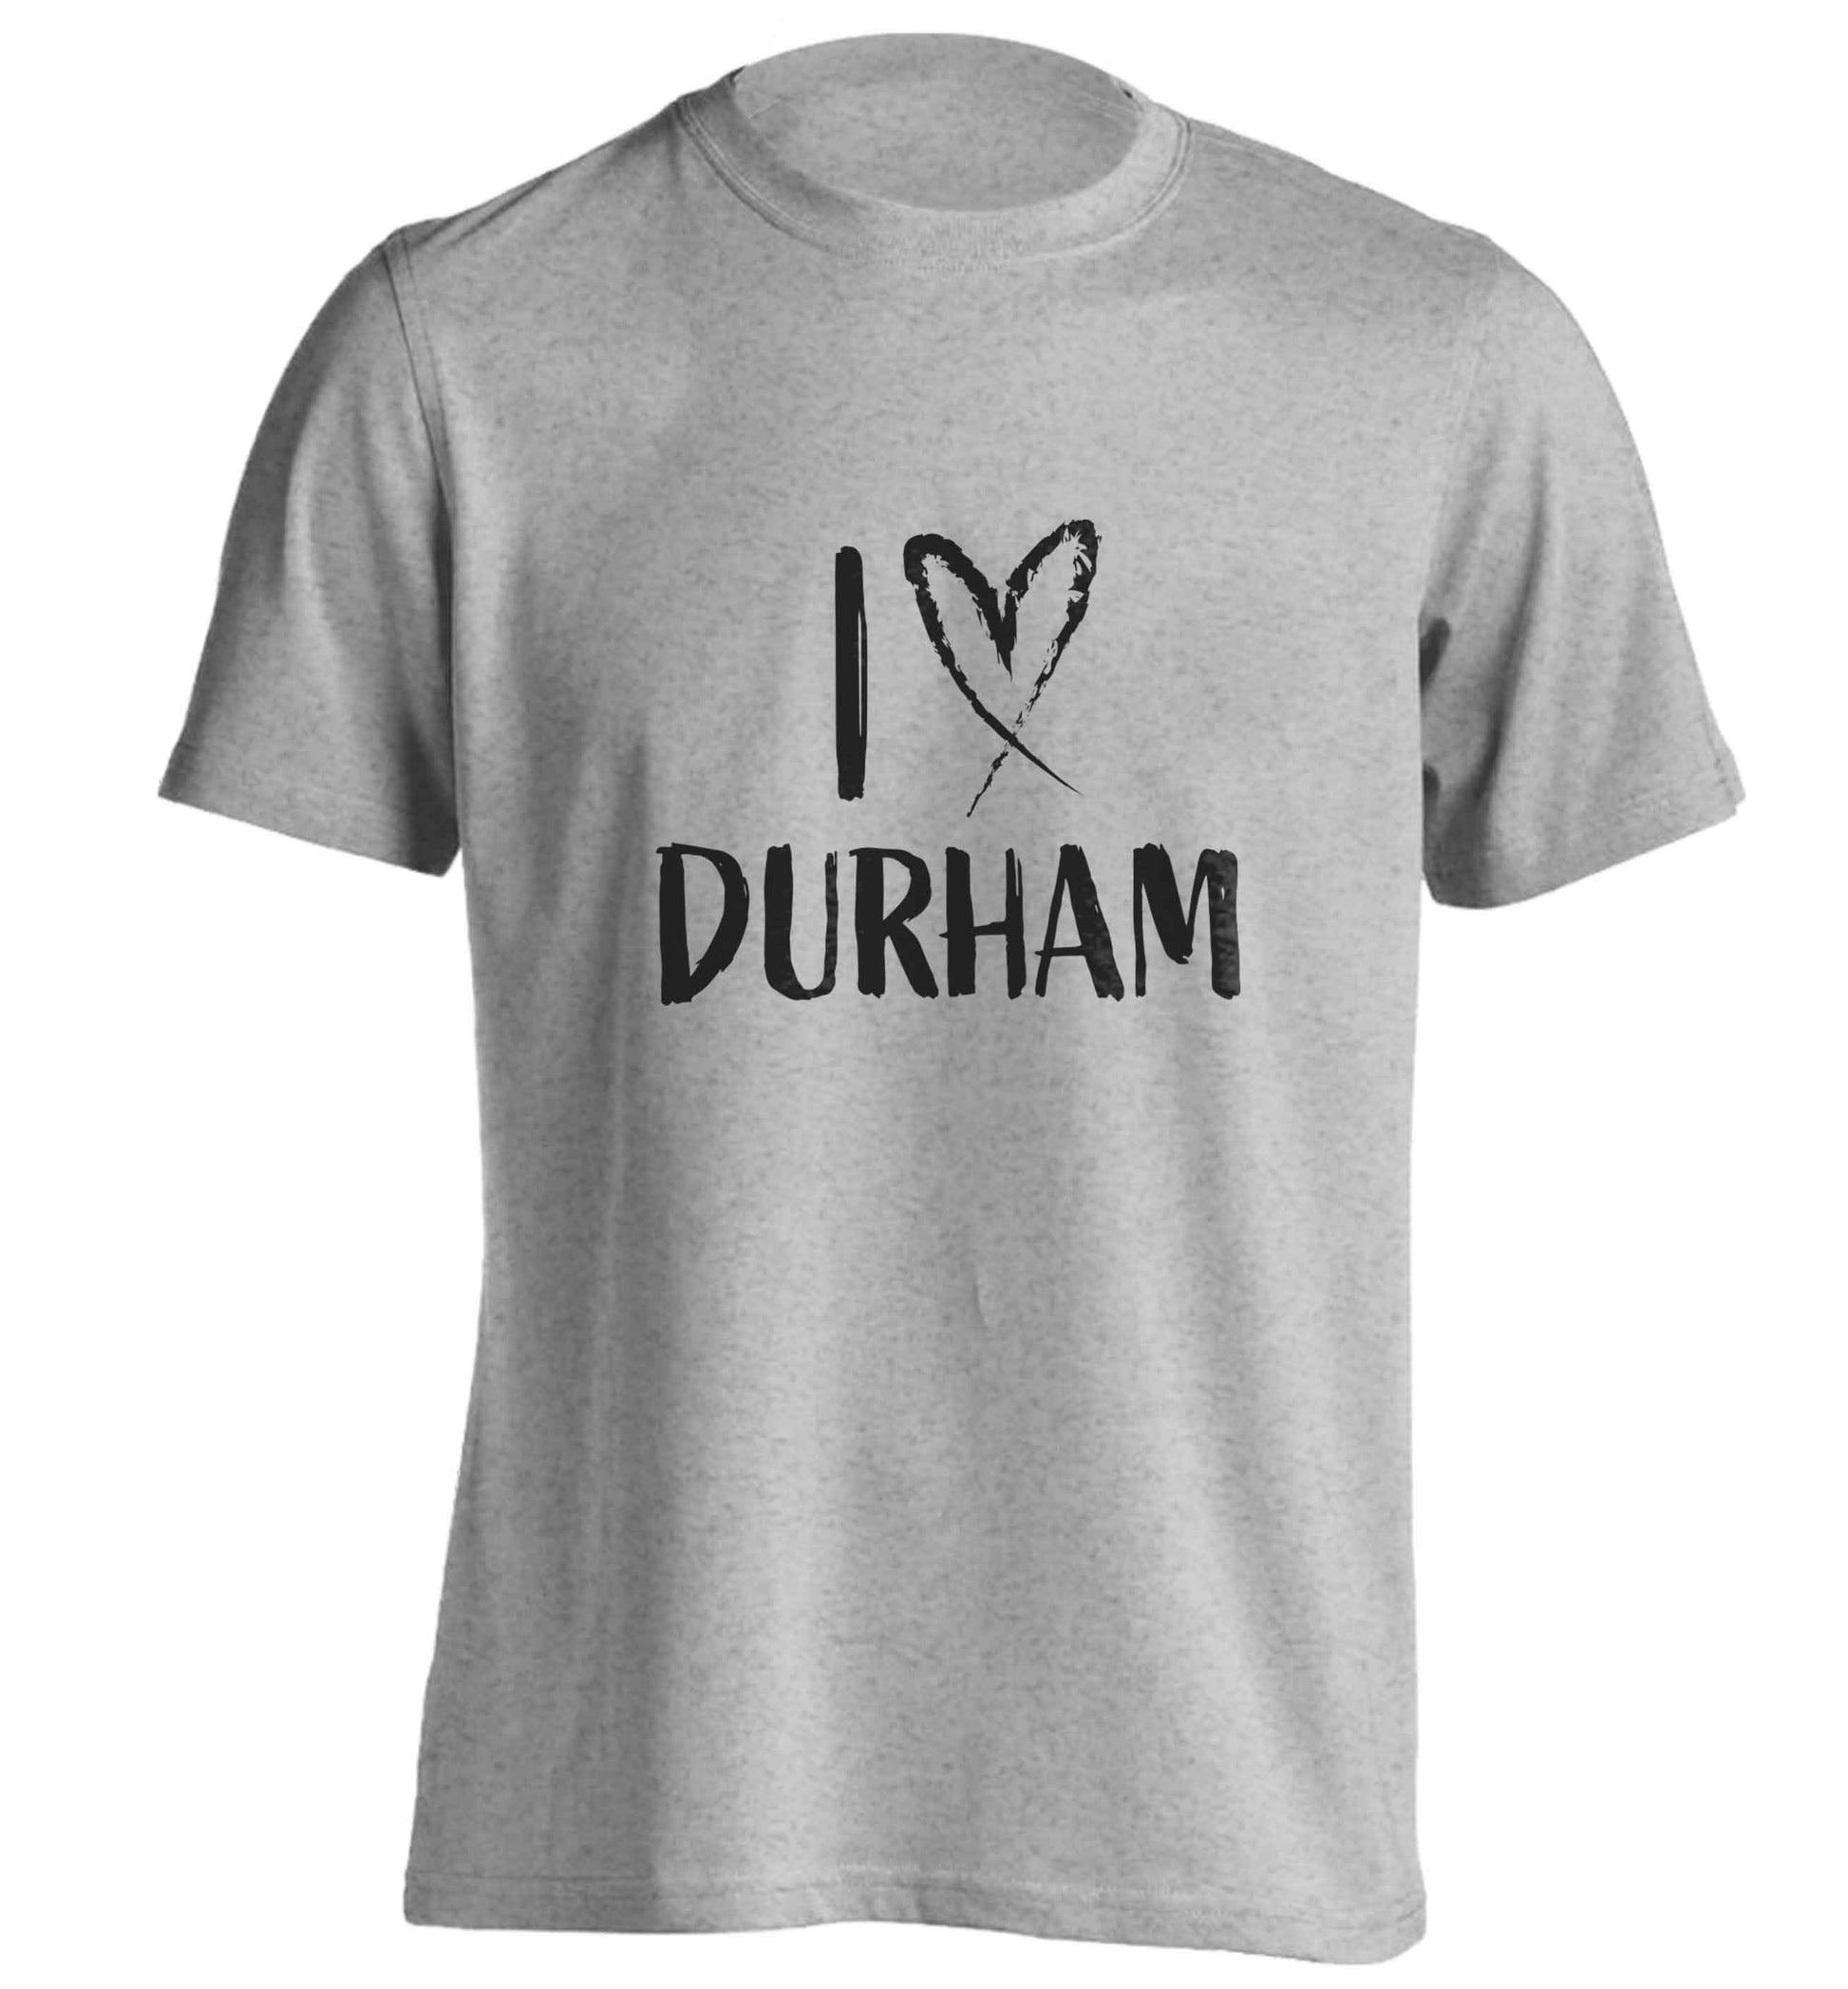 I love Durham adults unisex grey Tshirt 2XL